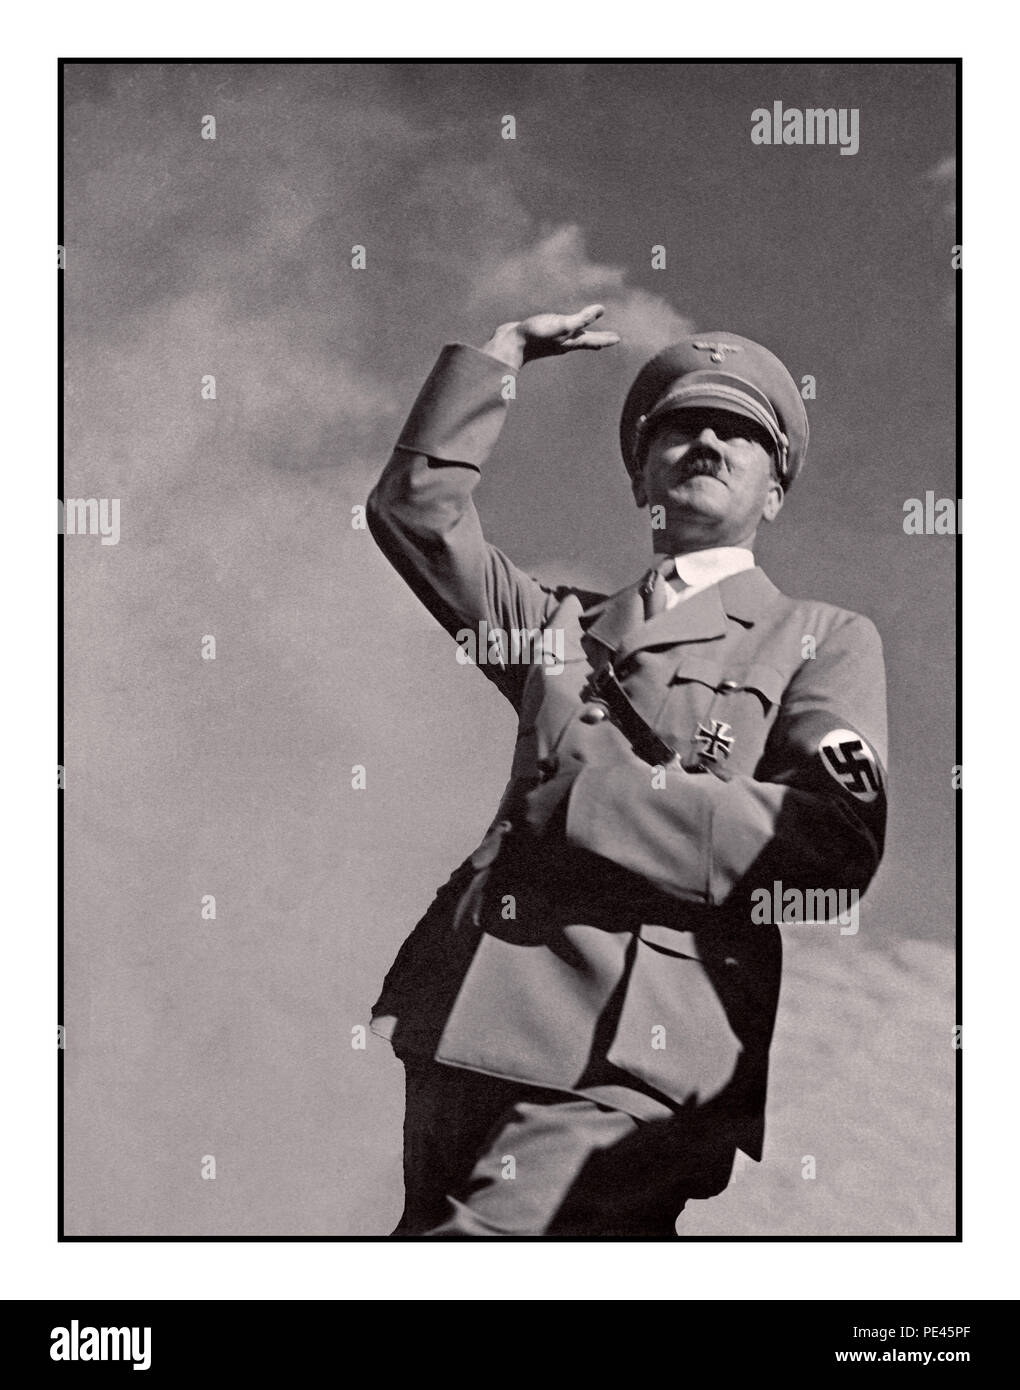 ADOLF HITLER SALUTE 1939 WW2 de la propagande allemande de droit d'Adolf Hitler en uniforme militaire portant un brassard à croix gammée nazie saluant "Heil Hitler" à une foule low angle view avec le fond de ciel Banque D'Images